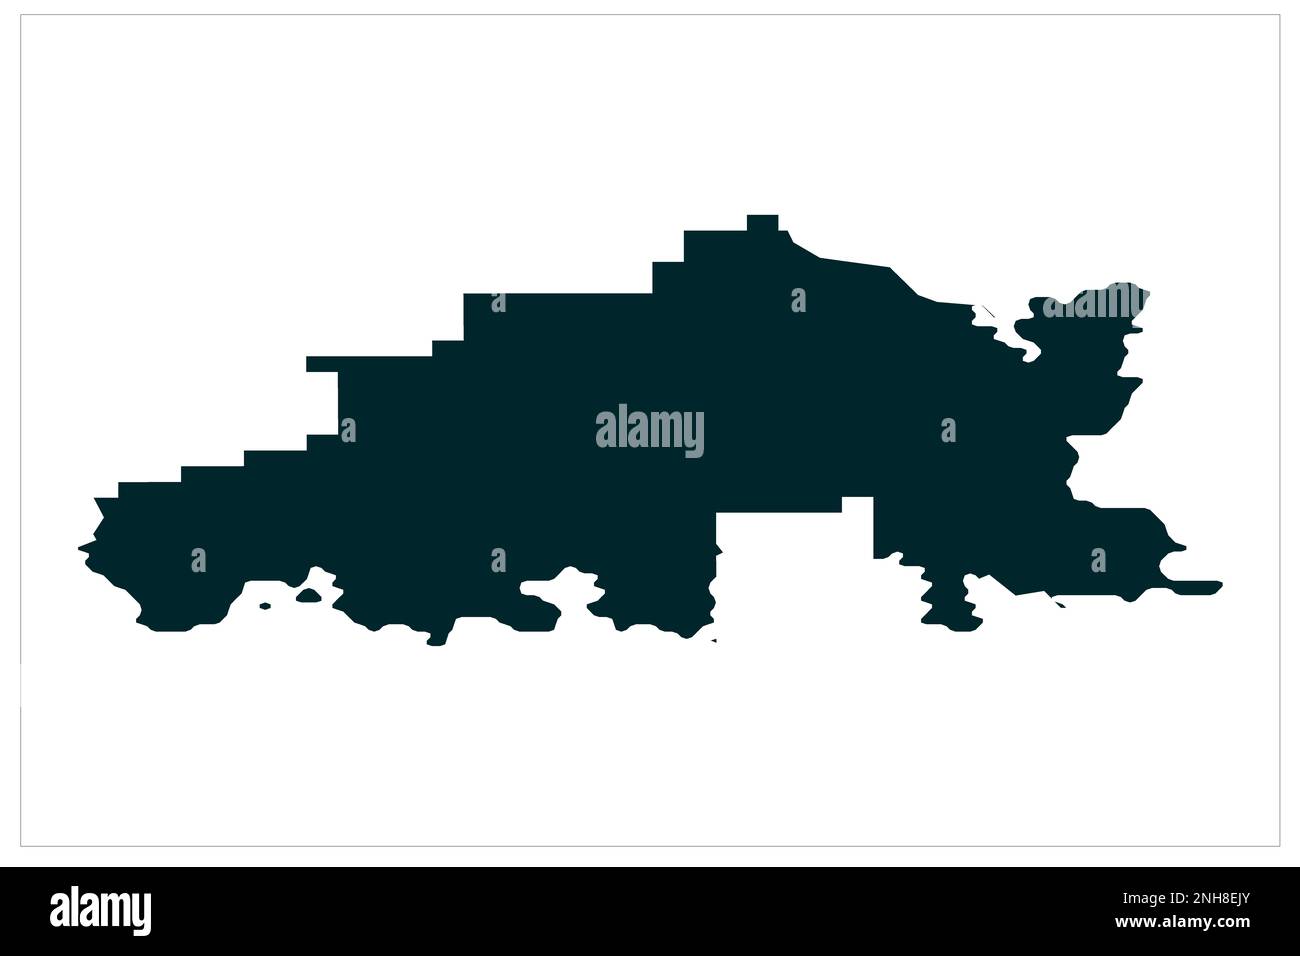 Jomala Aland Island map illustration on white bckgorund , Jomala Municipality Aland Islands map Stock Photo